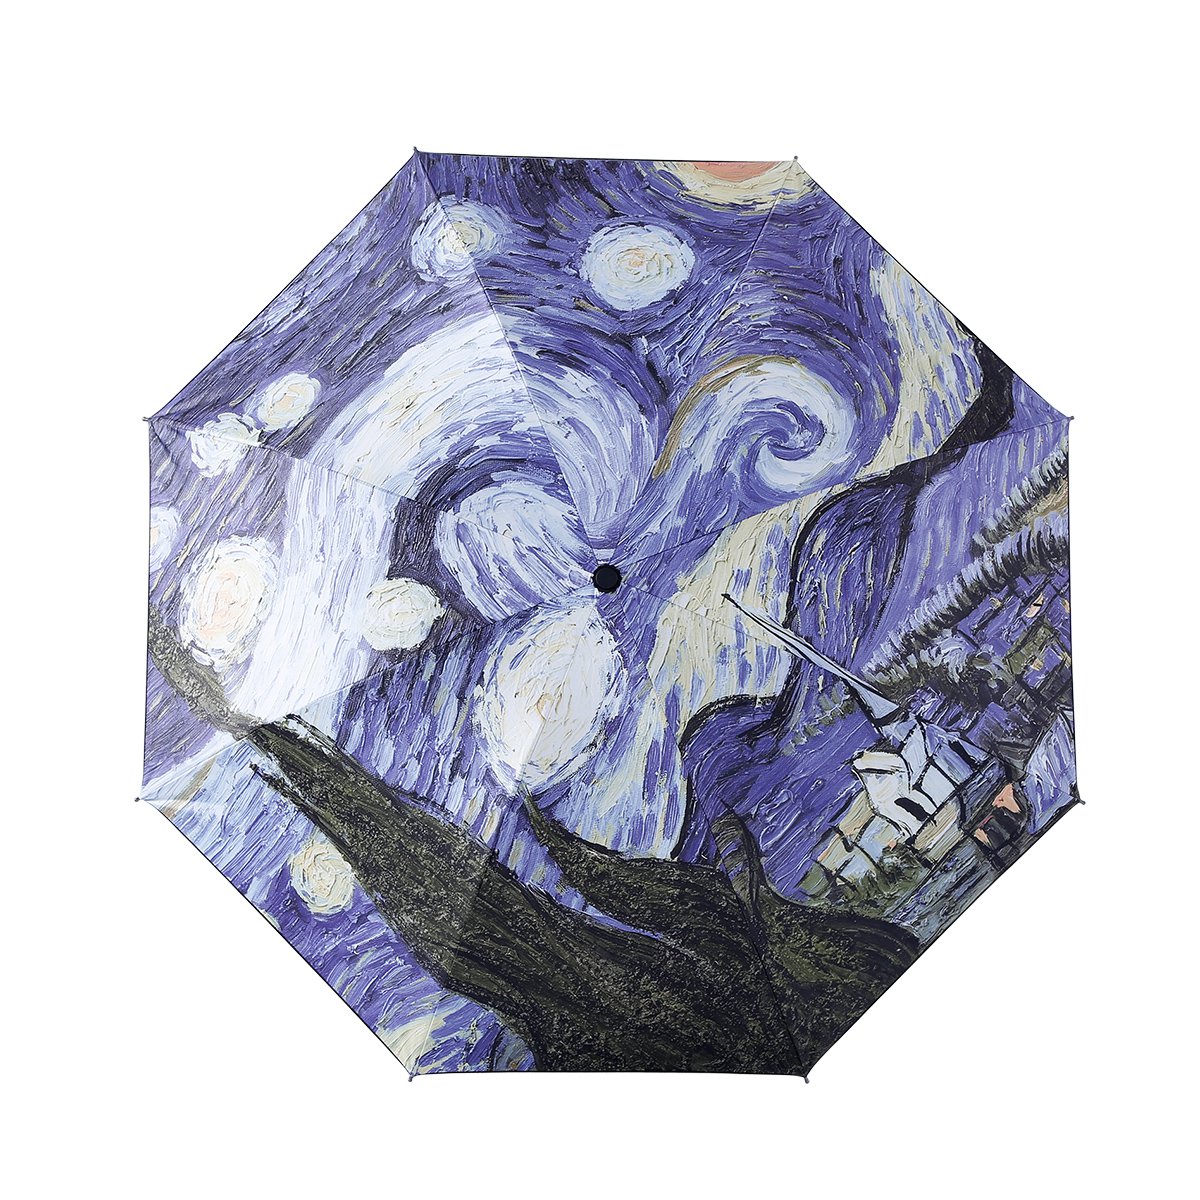 悦语梵高油画 星空图案黑胶防紫外线太阳伞 遮阳伞 晴雨两用伞晴雨伞